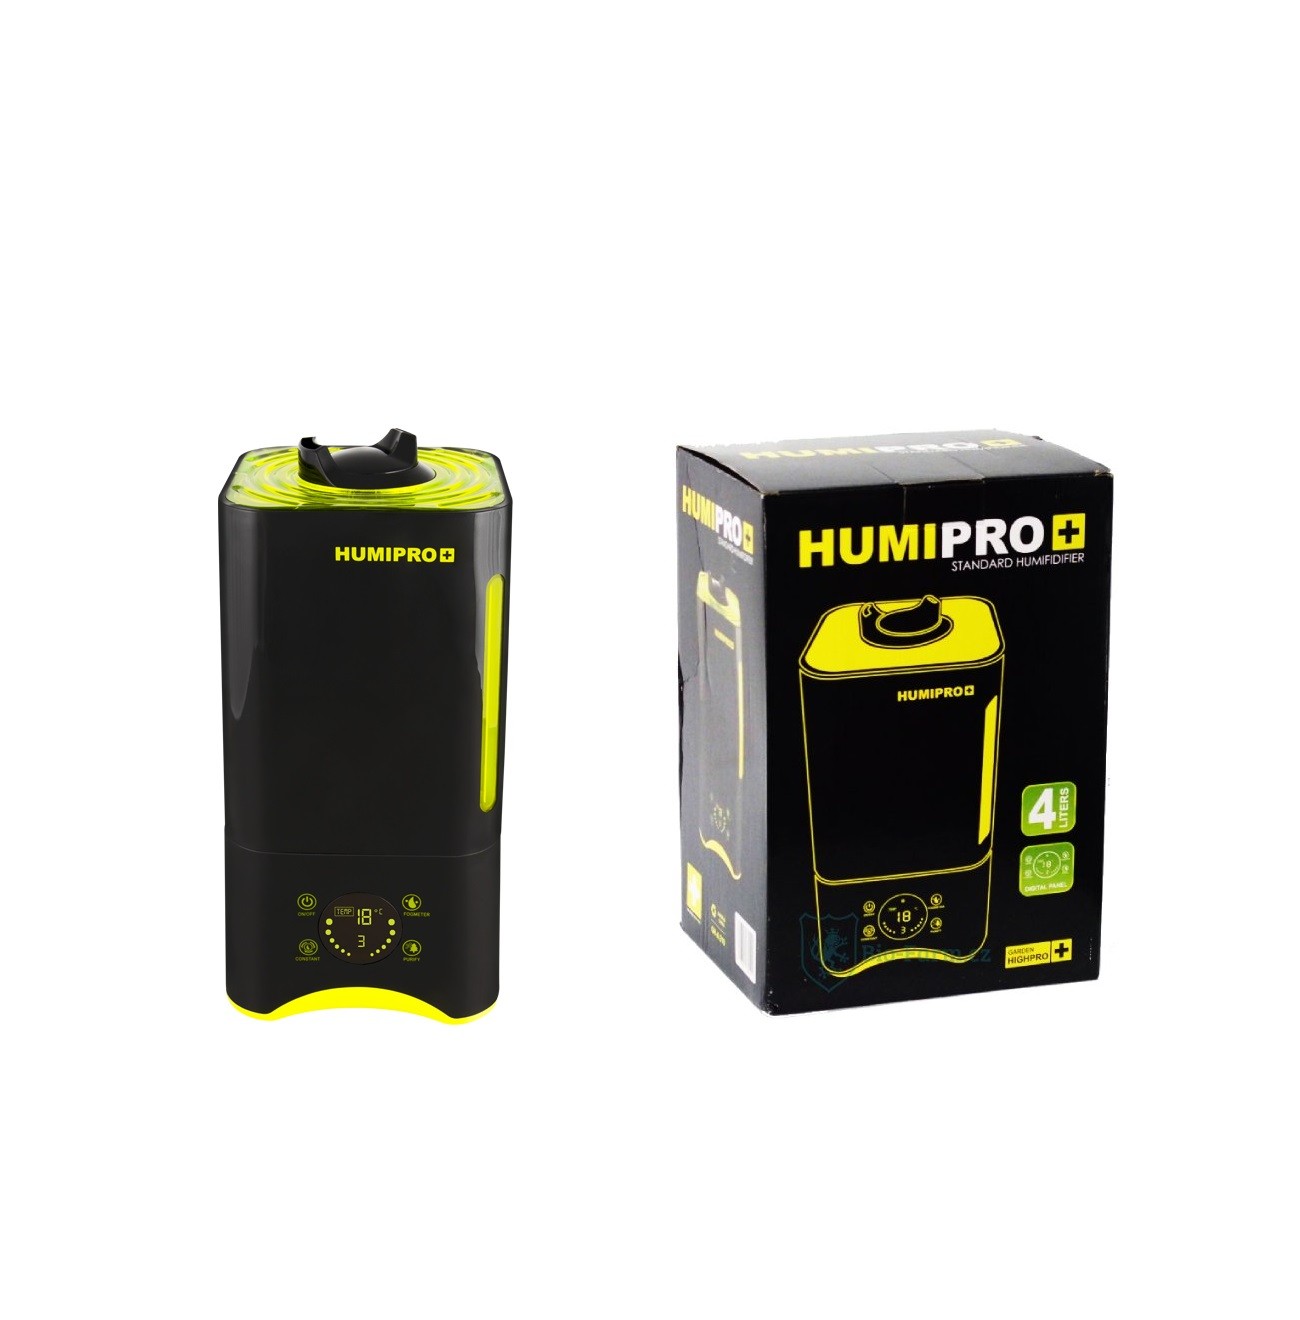 Humidificador HumiPro 4 Litros con Sonda Garden HighPro 2